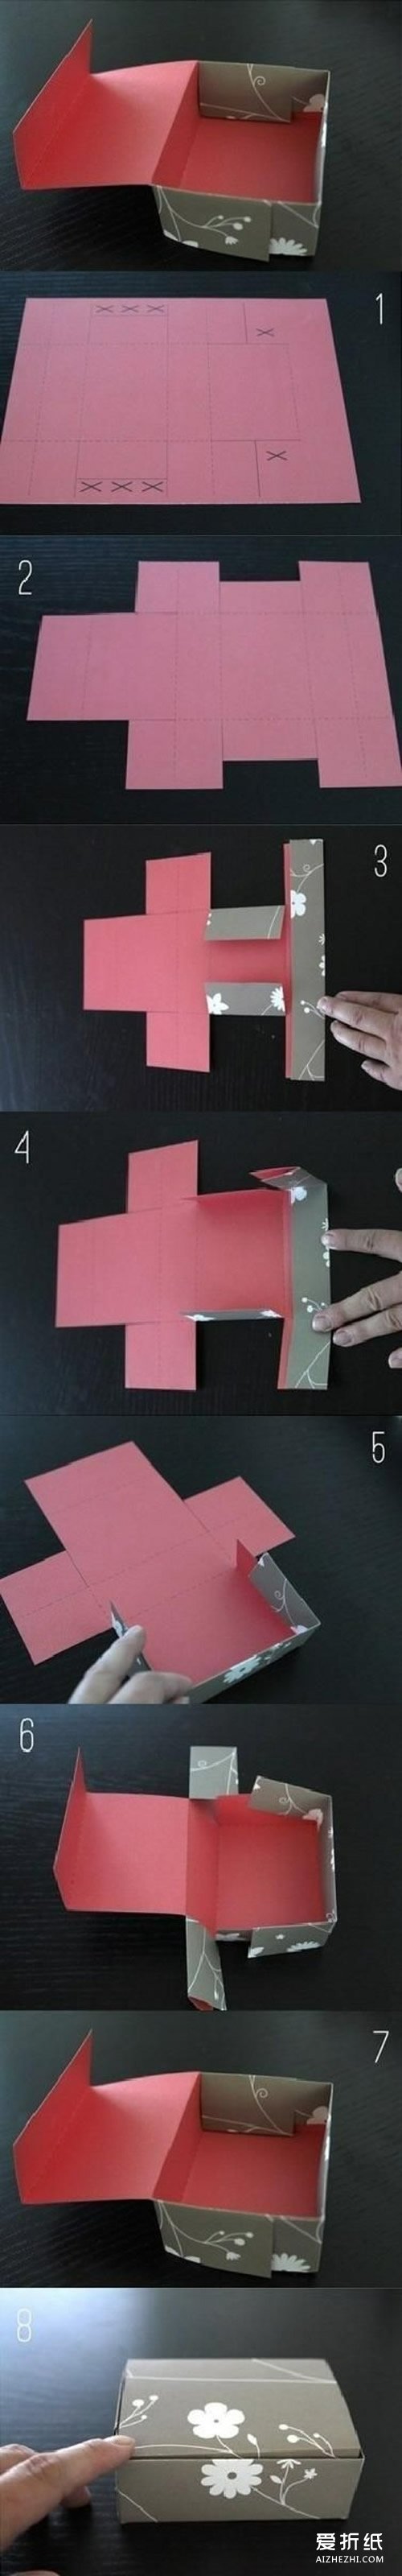 手工折纸实用纸盒子的折法图解- www.aizhezhi.com